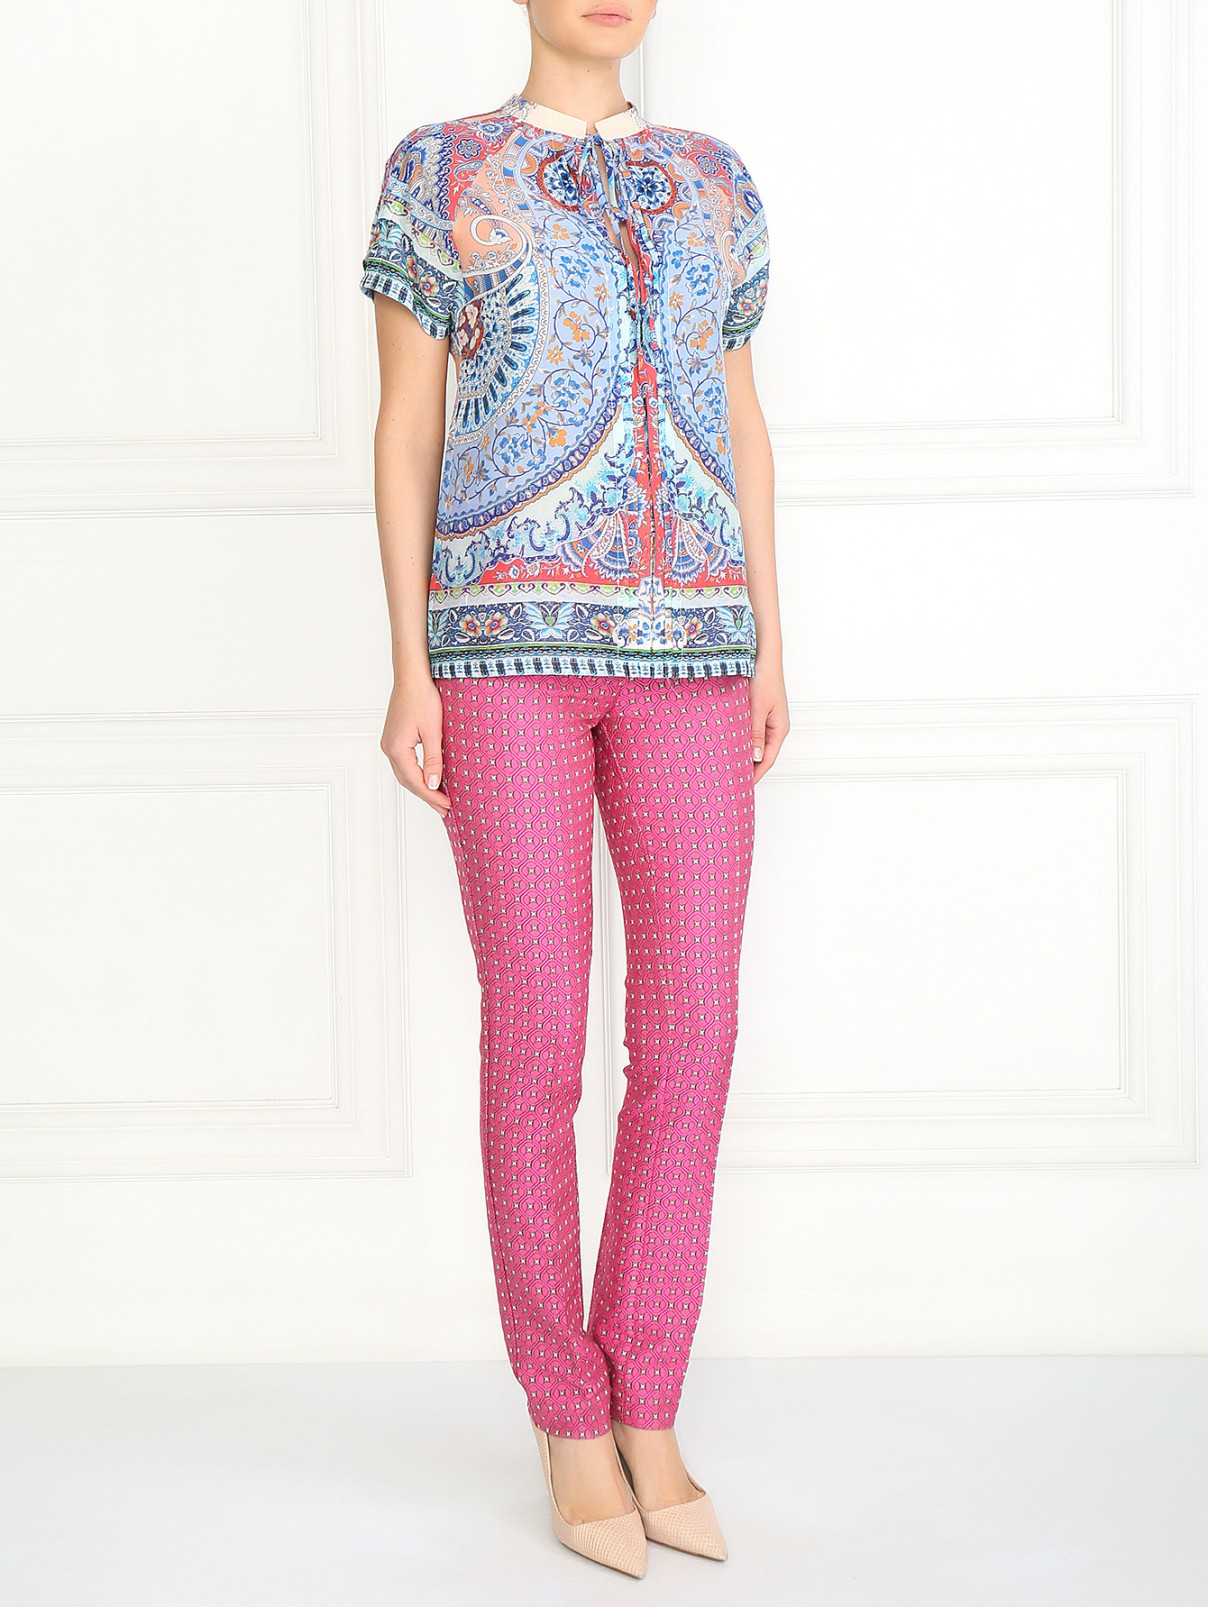 Блуза из хлопка и шелка с узором Etro  –  Модель Общий вид  – Цвет:  Узор